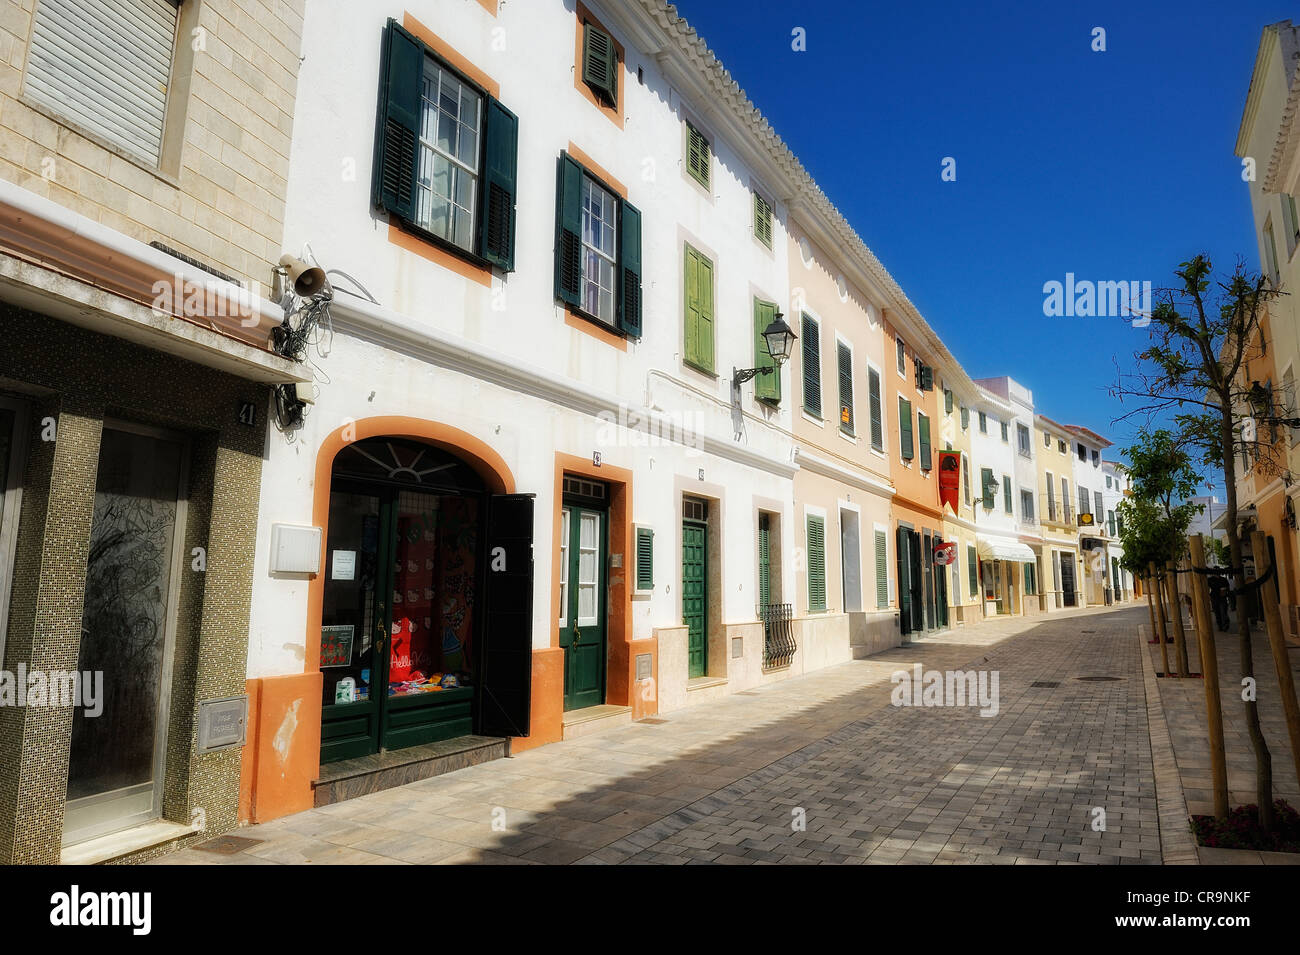 Las calles desiertas de la ciudad española de Es Mercadal menorca islas baleares españa mejoradas digitalmente Foto de stock